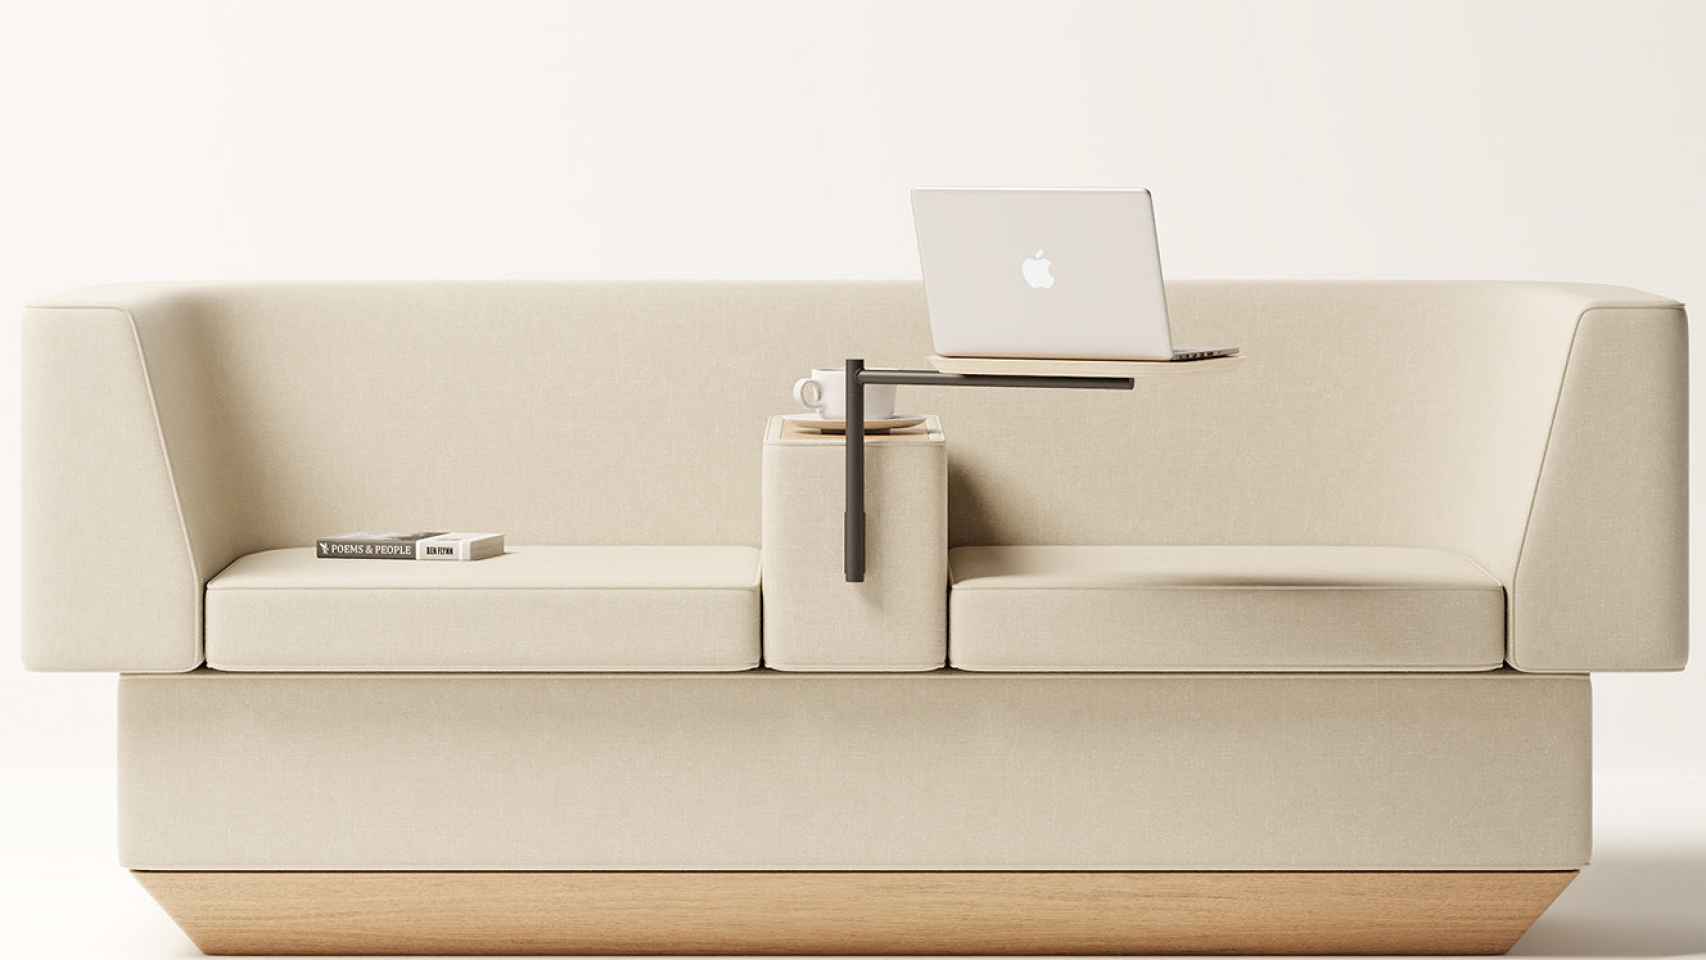 Días laborables Entender mal Vadear El sofá para teletrabajar: mesa plegable, enchufe y USB